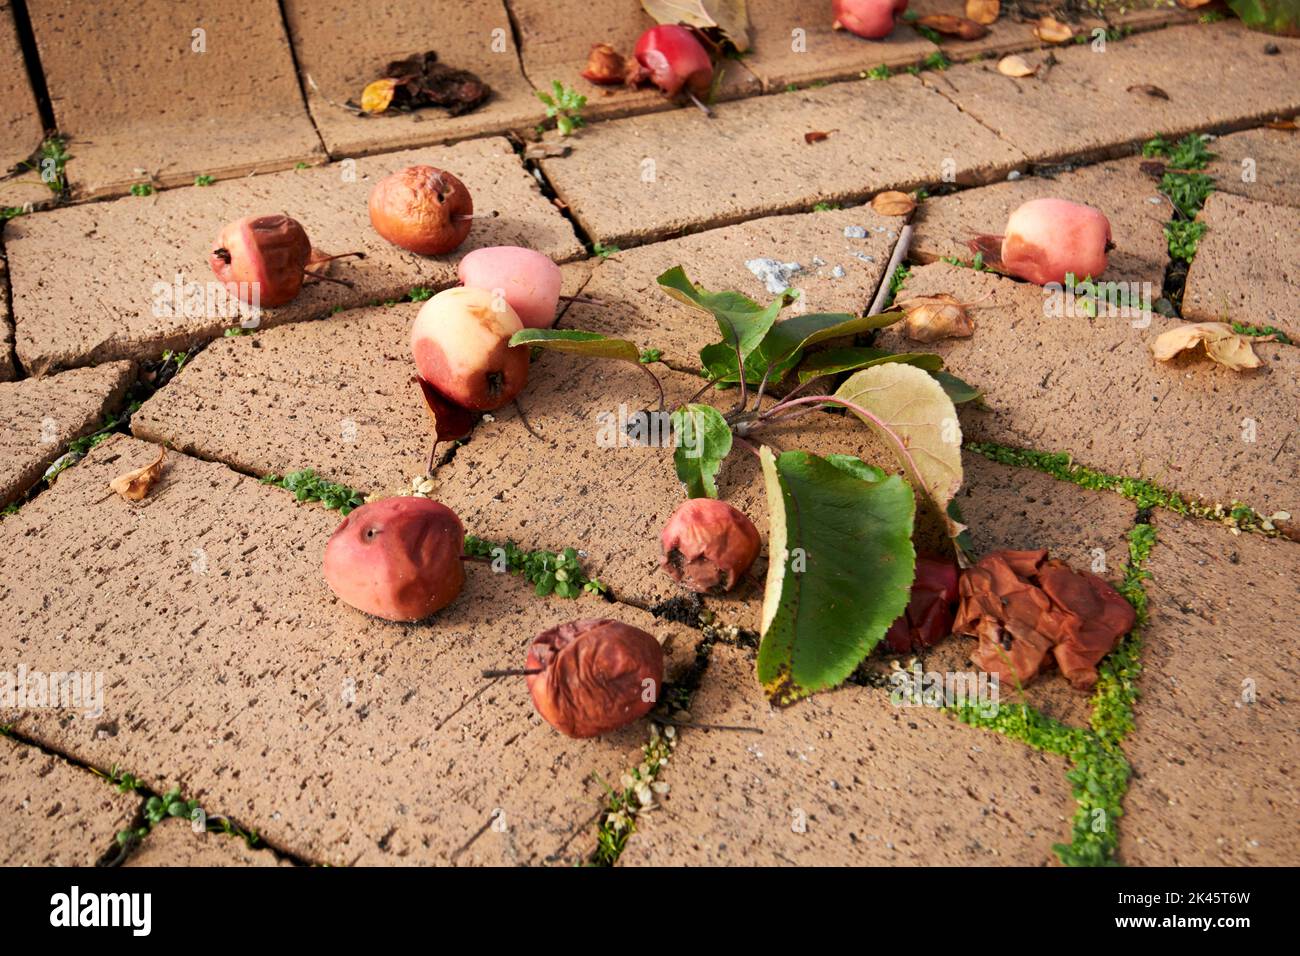 manzanas de cangrejo caídas y podridas en un pavimento en el reino unido Foto de stock